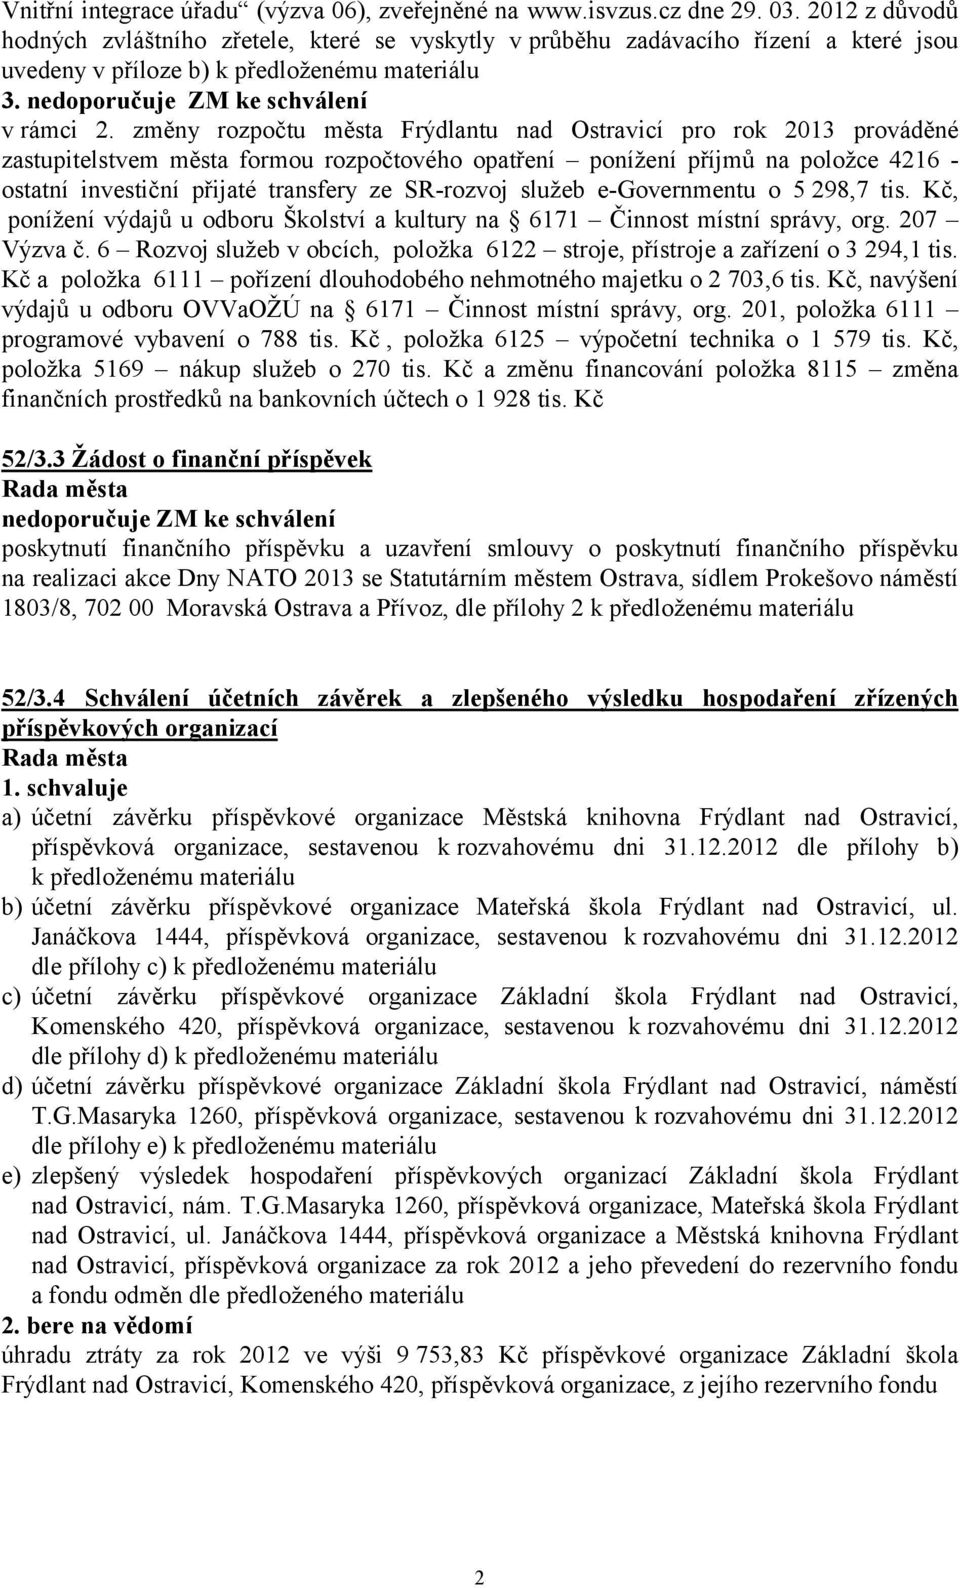 změny rozpočtu města Frýdlantu nad Ostravicí pro rok 2013 prováděné zastupitelstvem města formou rozpočtového opatření ponížení příjmů na položce 4216 - ostatní investiční přijaté transfery ze